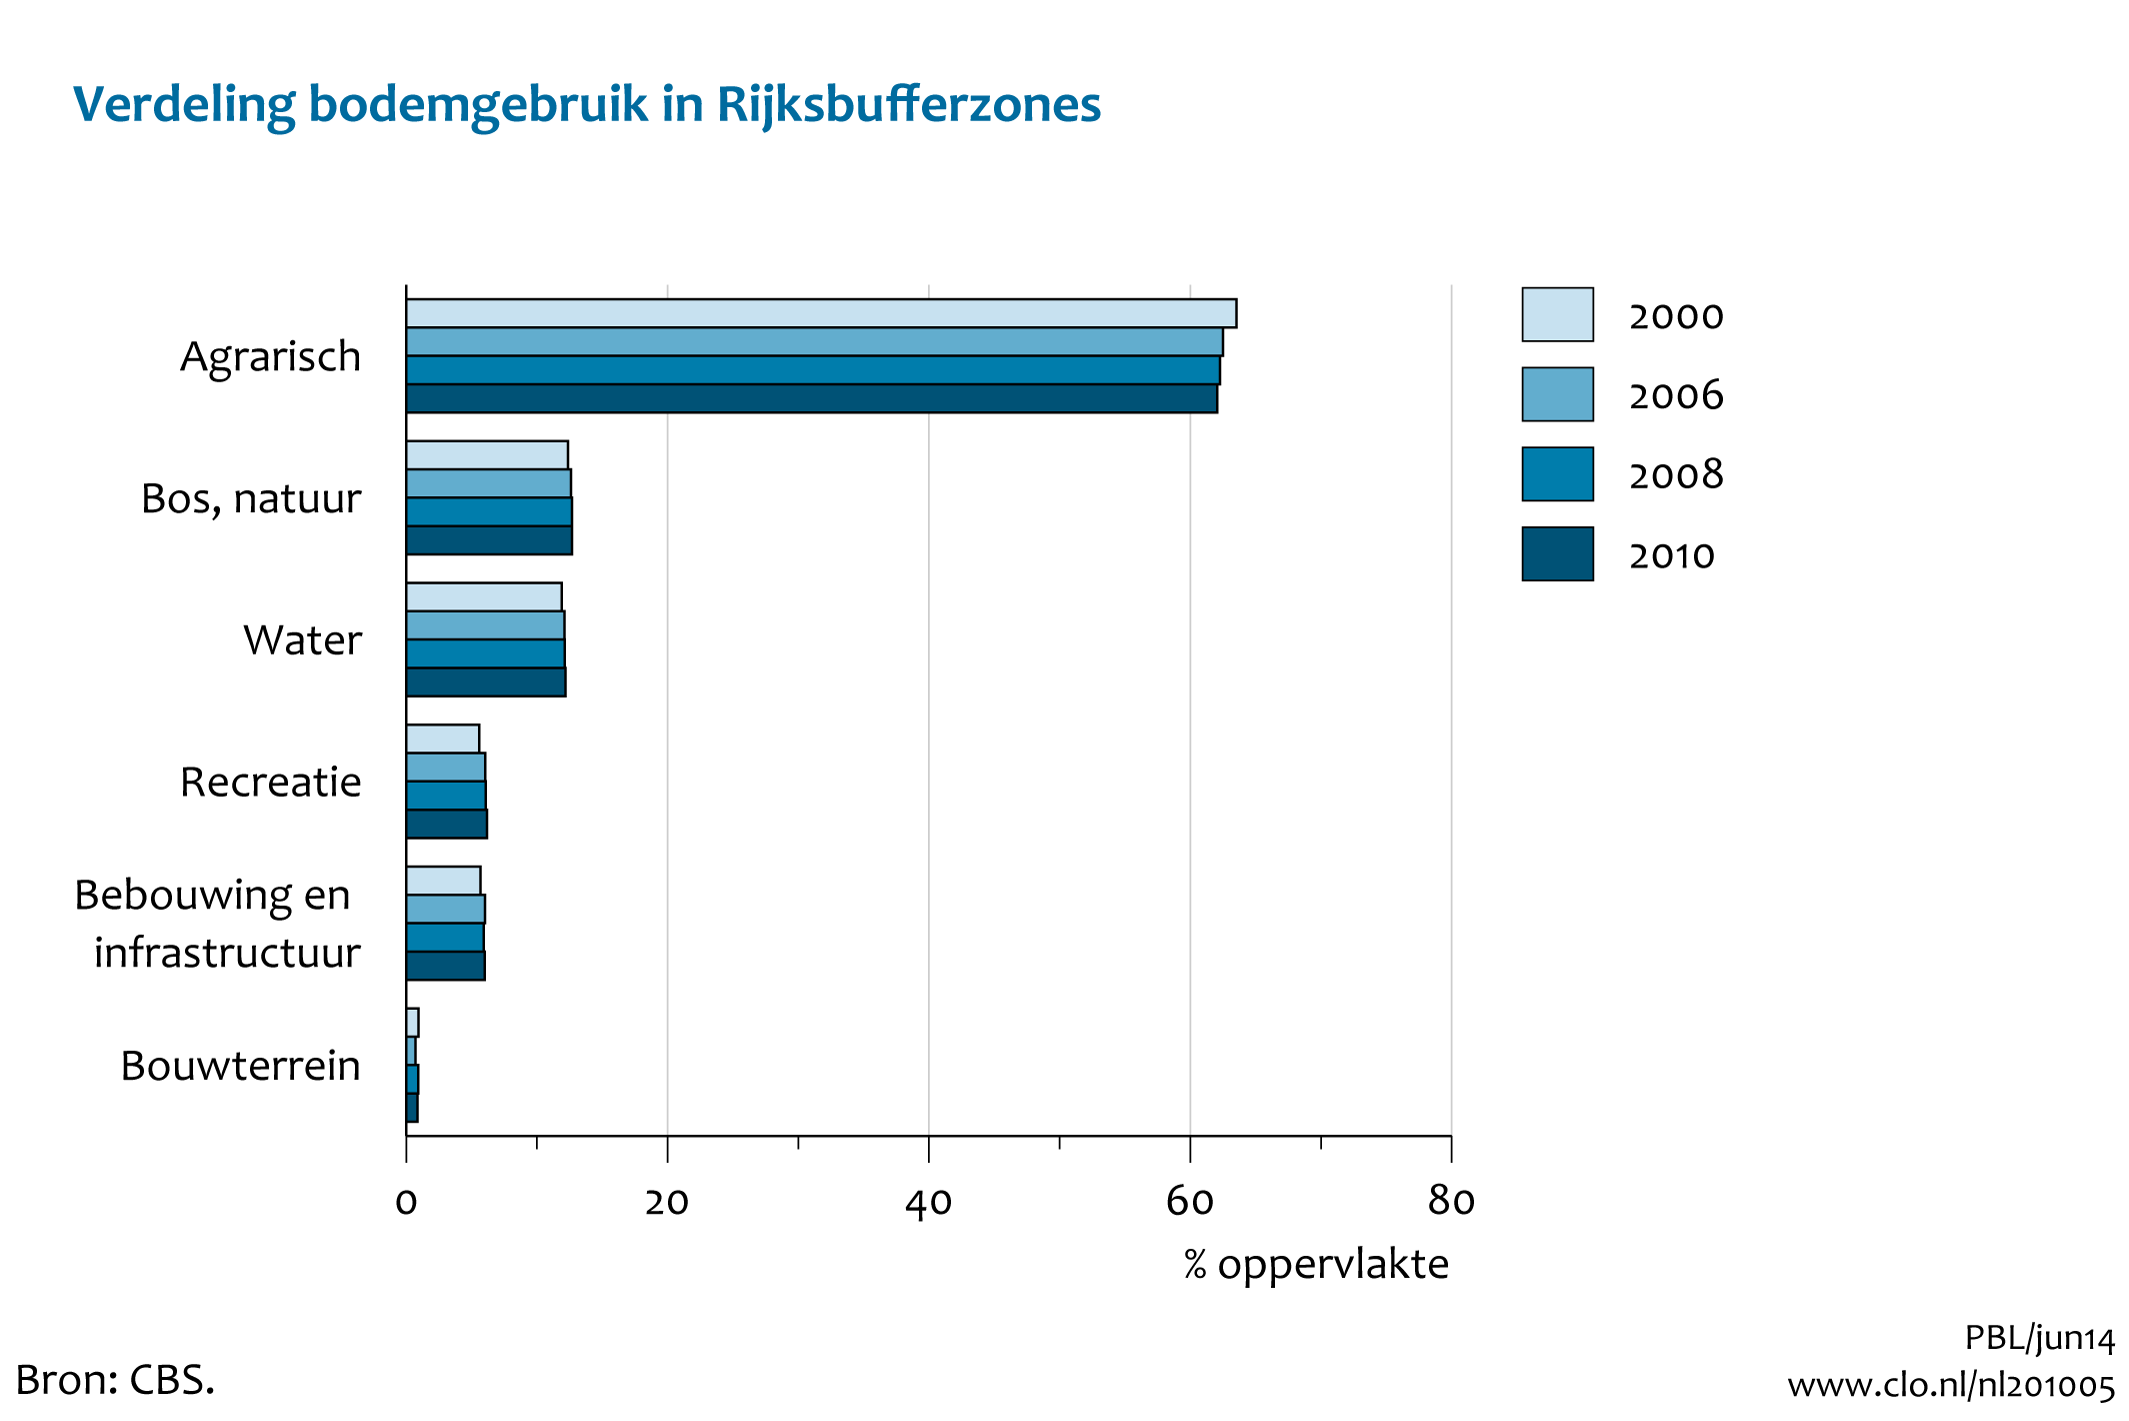 Figuur Verdeling bodemgebruik in Rijksbufferzones, 2000-2010. In de rest van de tekst wordt deze figuur uitgebreider uitgelegd.